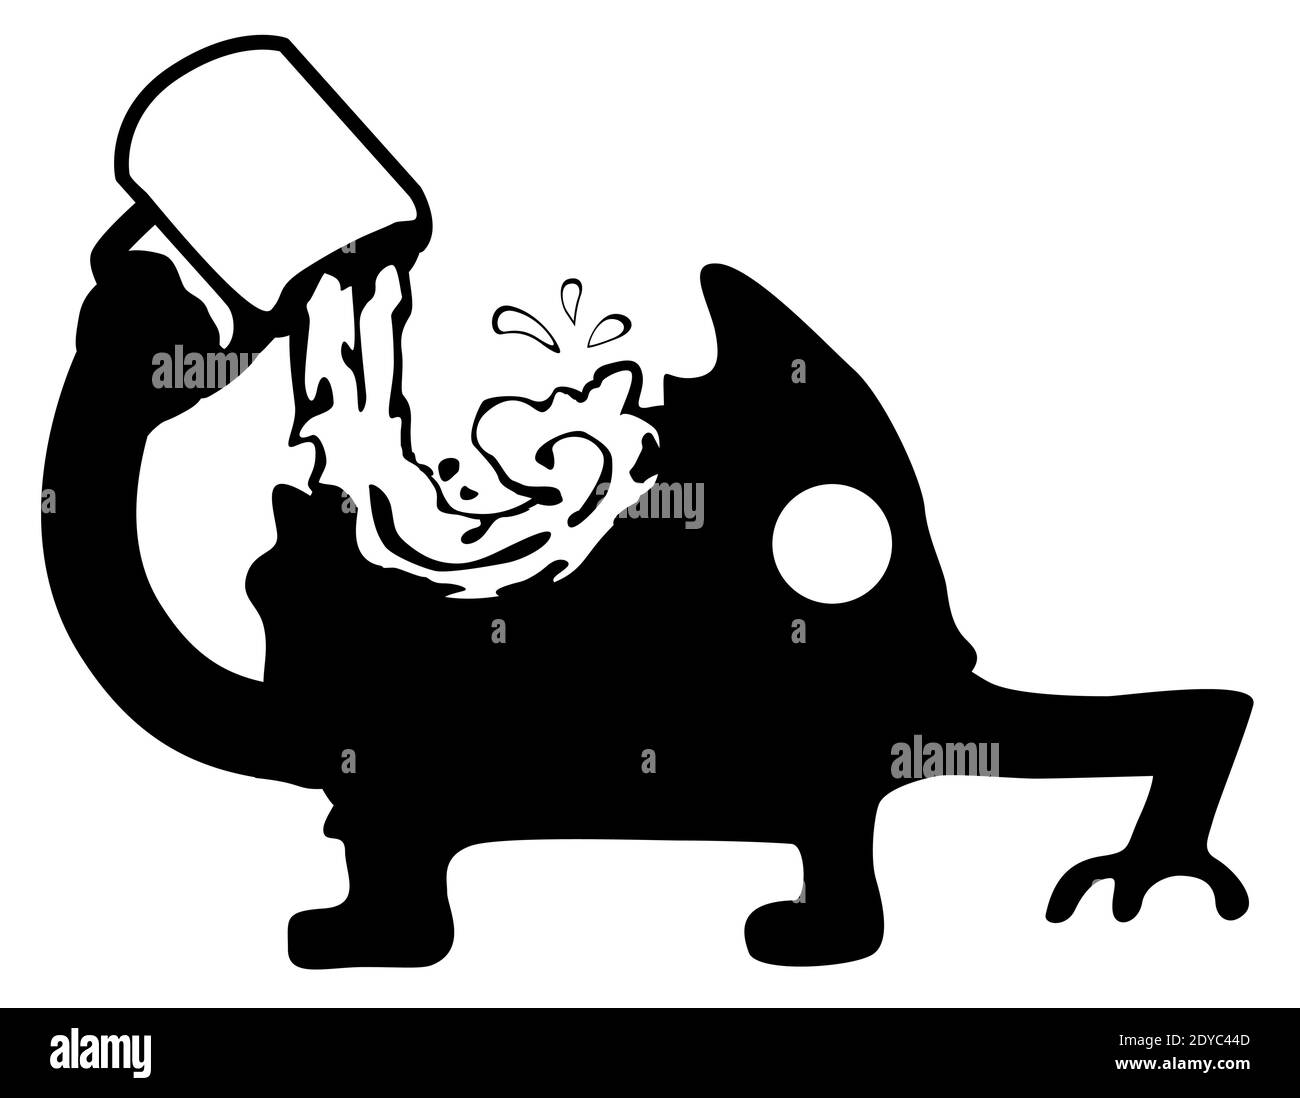 Tuckende Getränk aus Tasse gierig Figur Silhouette Schablone schwarz, Vektor-Illustration, horizontal, über weiß, isoliert Stock Vektor